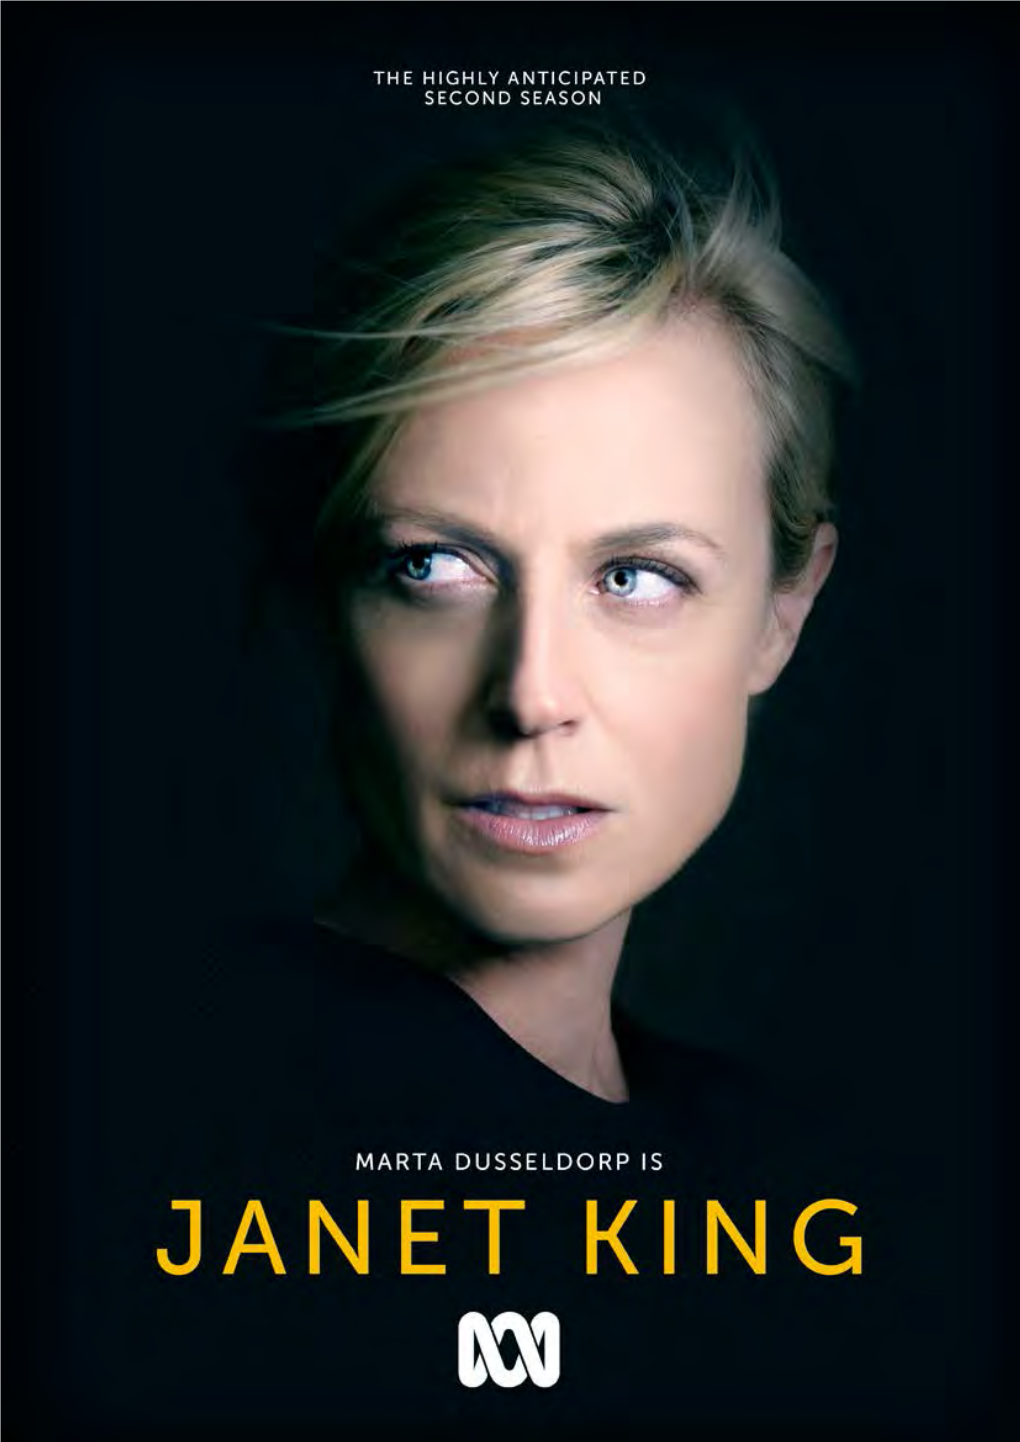 JANET KING - Season